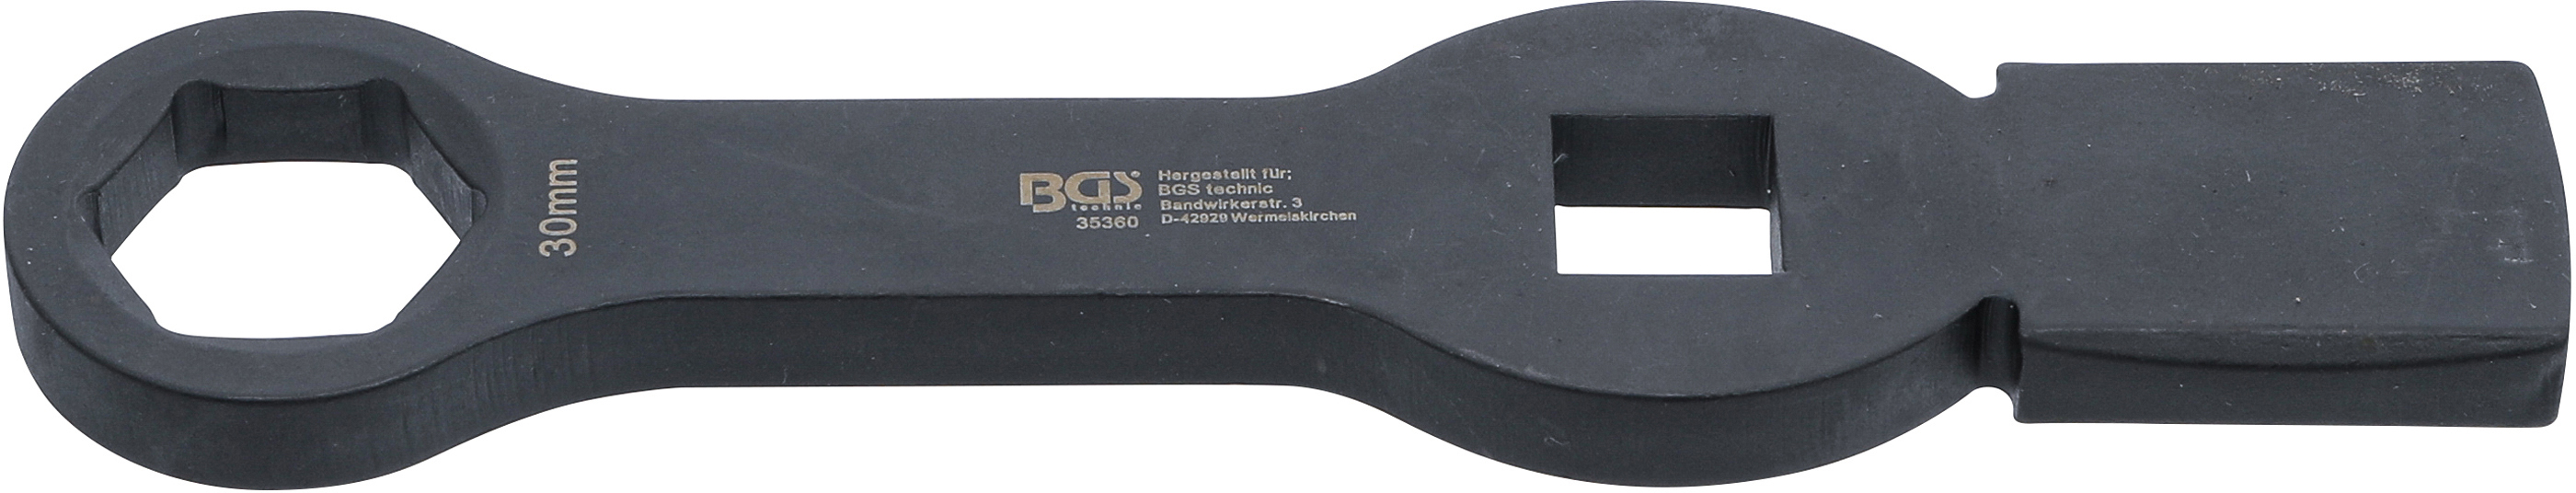 BGS 35360 Cheie inelară de impact, 6 colţuri, cu 2 suprafeţe de impact, 30 mm